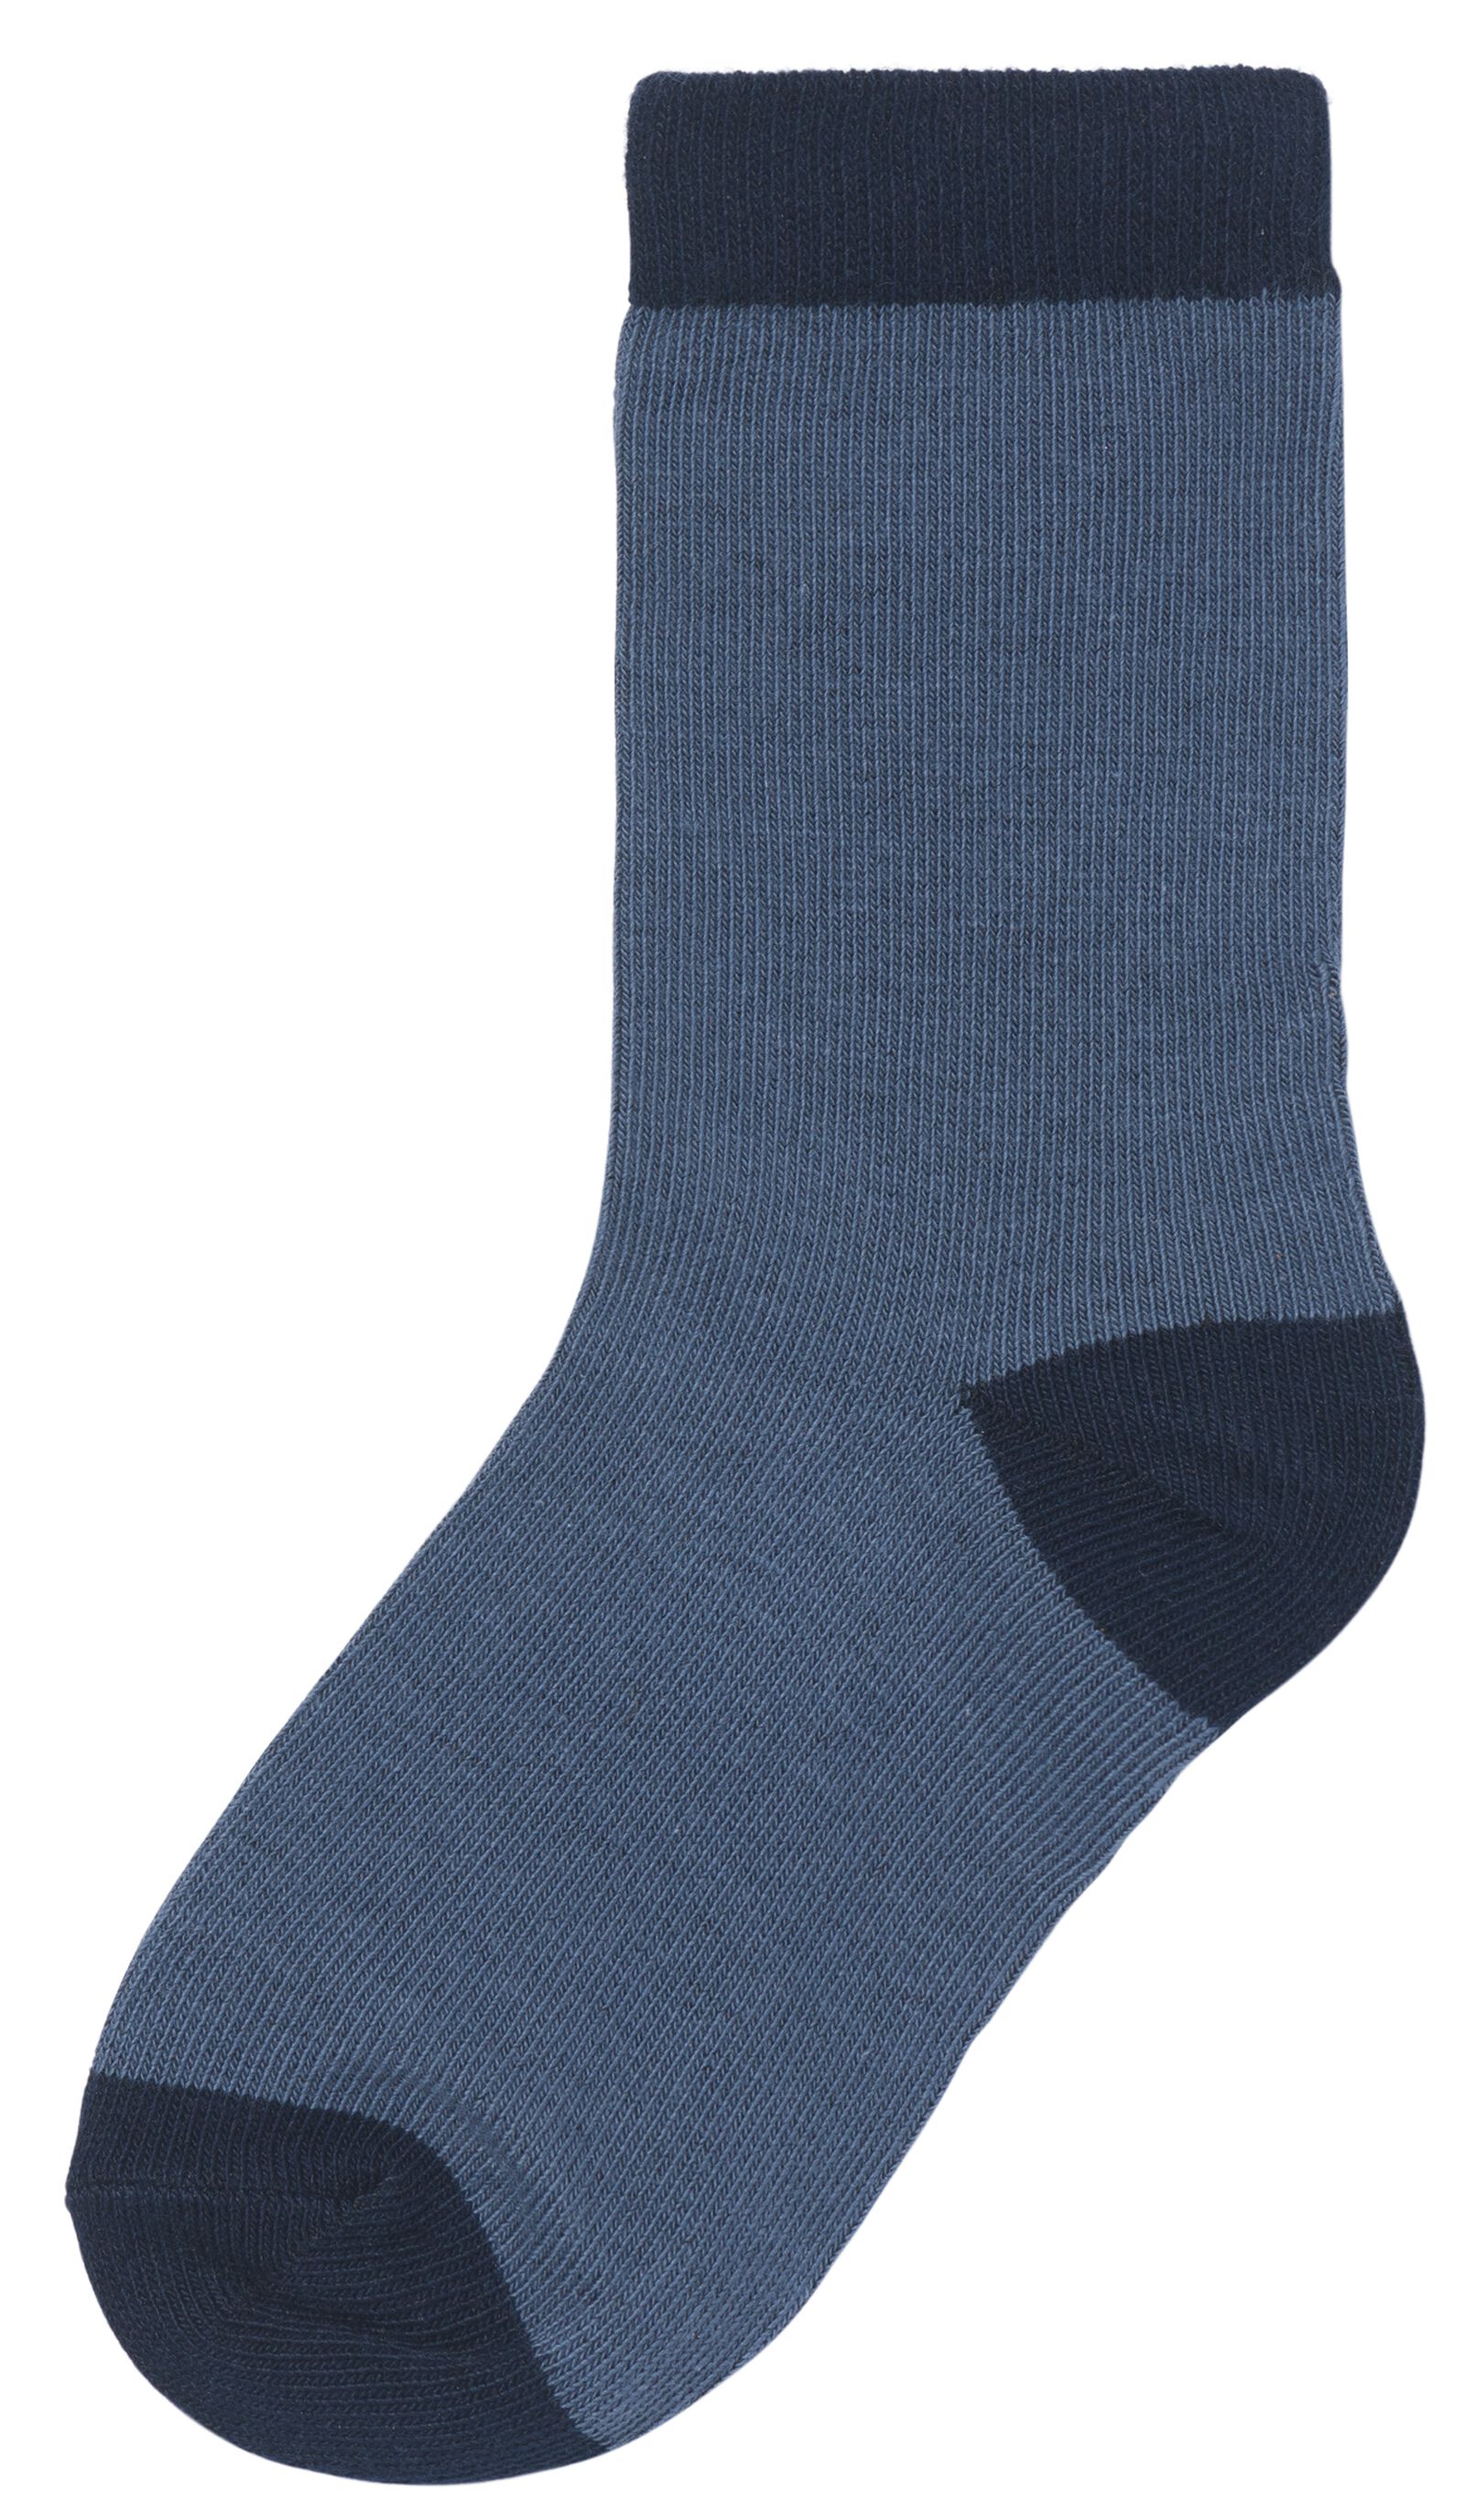 5 paires de chaussettes enfant avec coton bleu 23/26 - 4360051 - HEMA